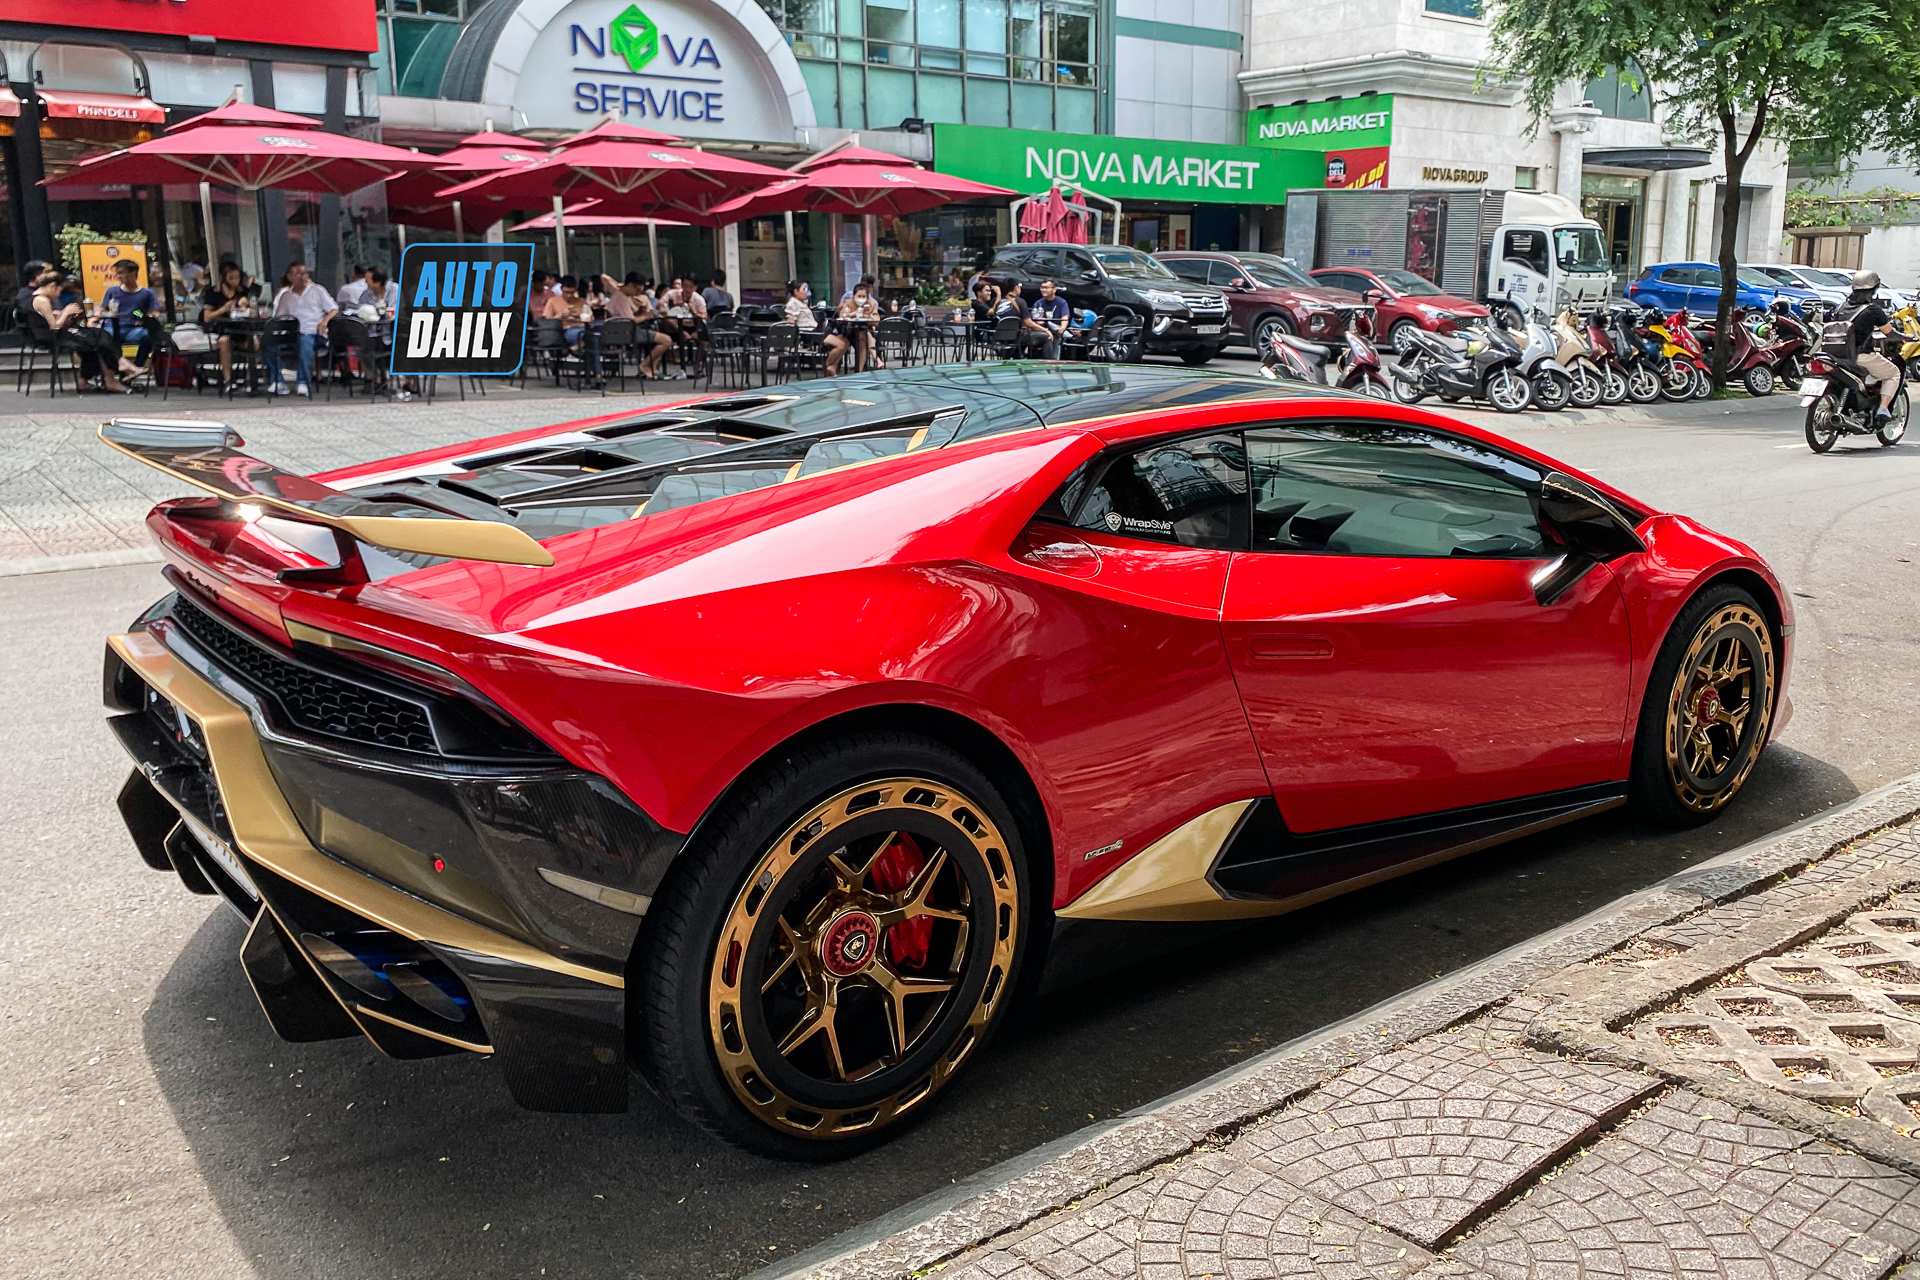 Bắt gặp Lamborghini Huracan độ khủng của đại gia Sài Gòn, bộ mâm hàng thửa giá hàng trăm triệu lamborghini-huracan-do-bo-mam-tram-trieu-autodaily-2.JPG